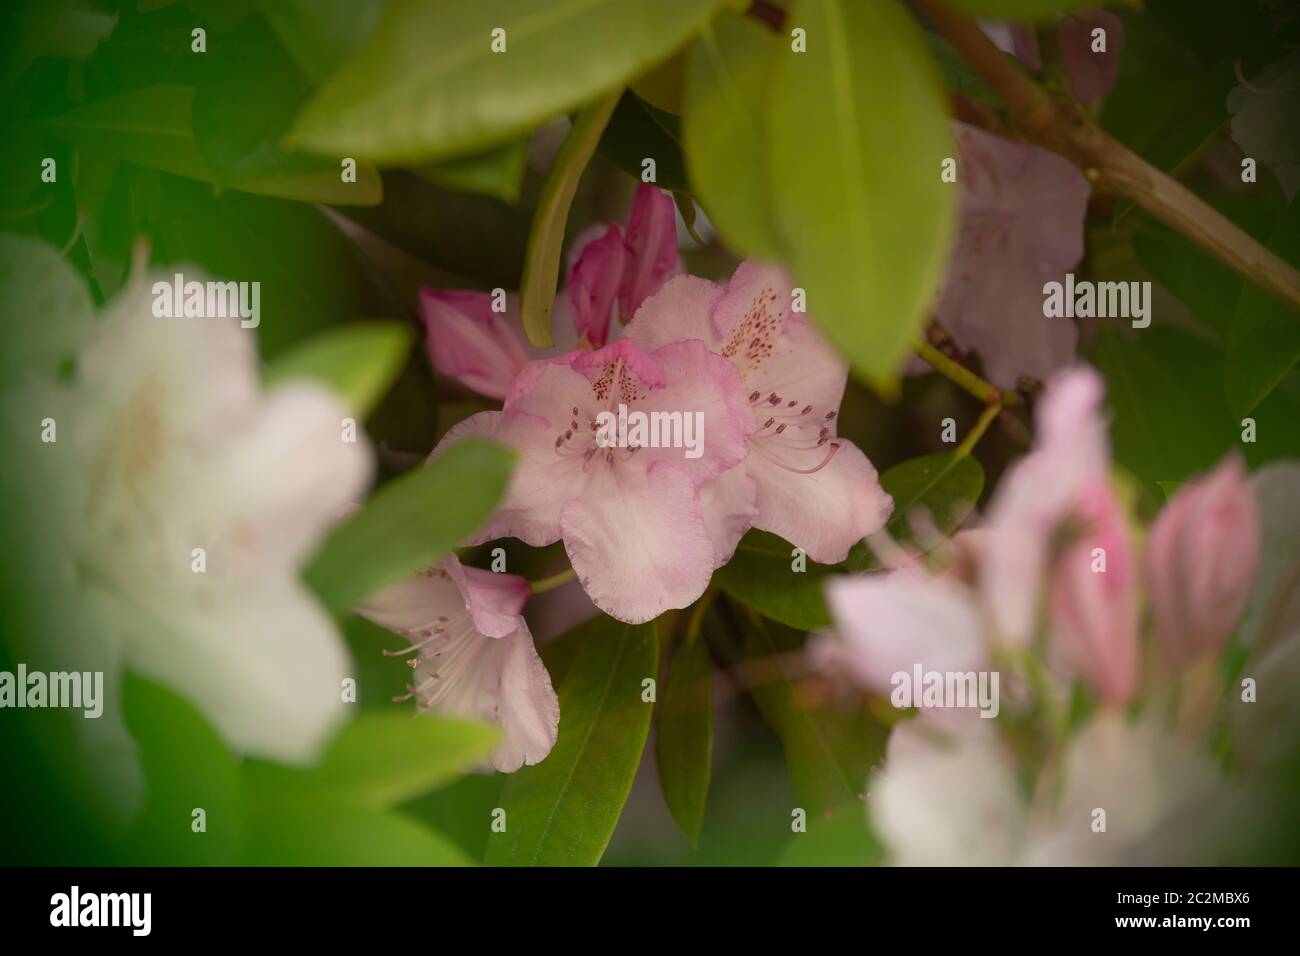 WA16908-00...WASHINGTON - EIN Rhododendron beginnt zu blühen. Stockfoto